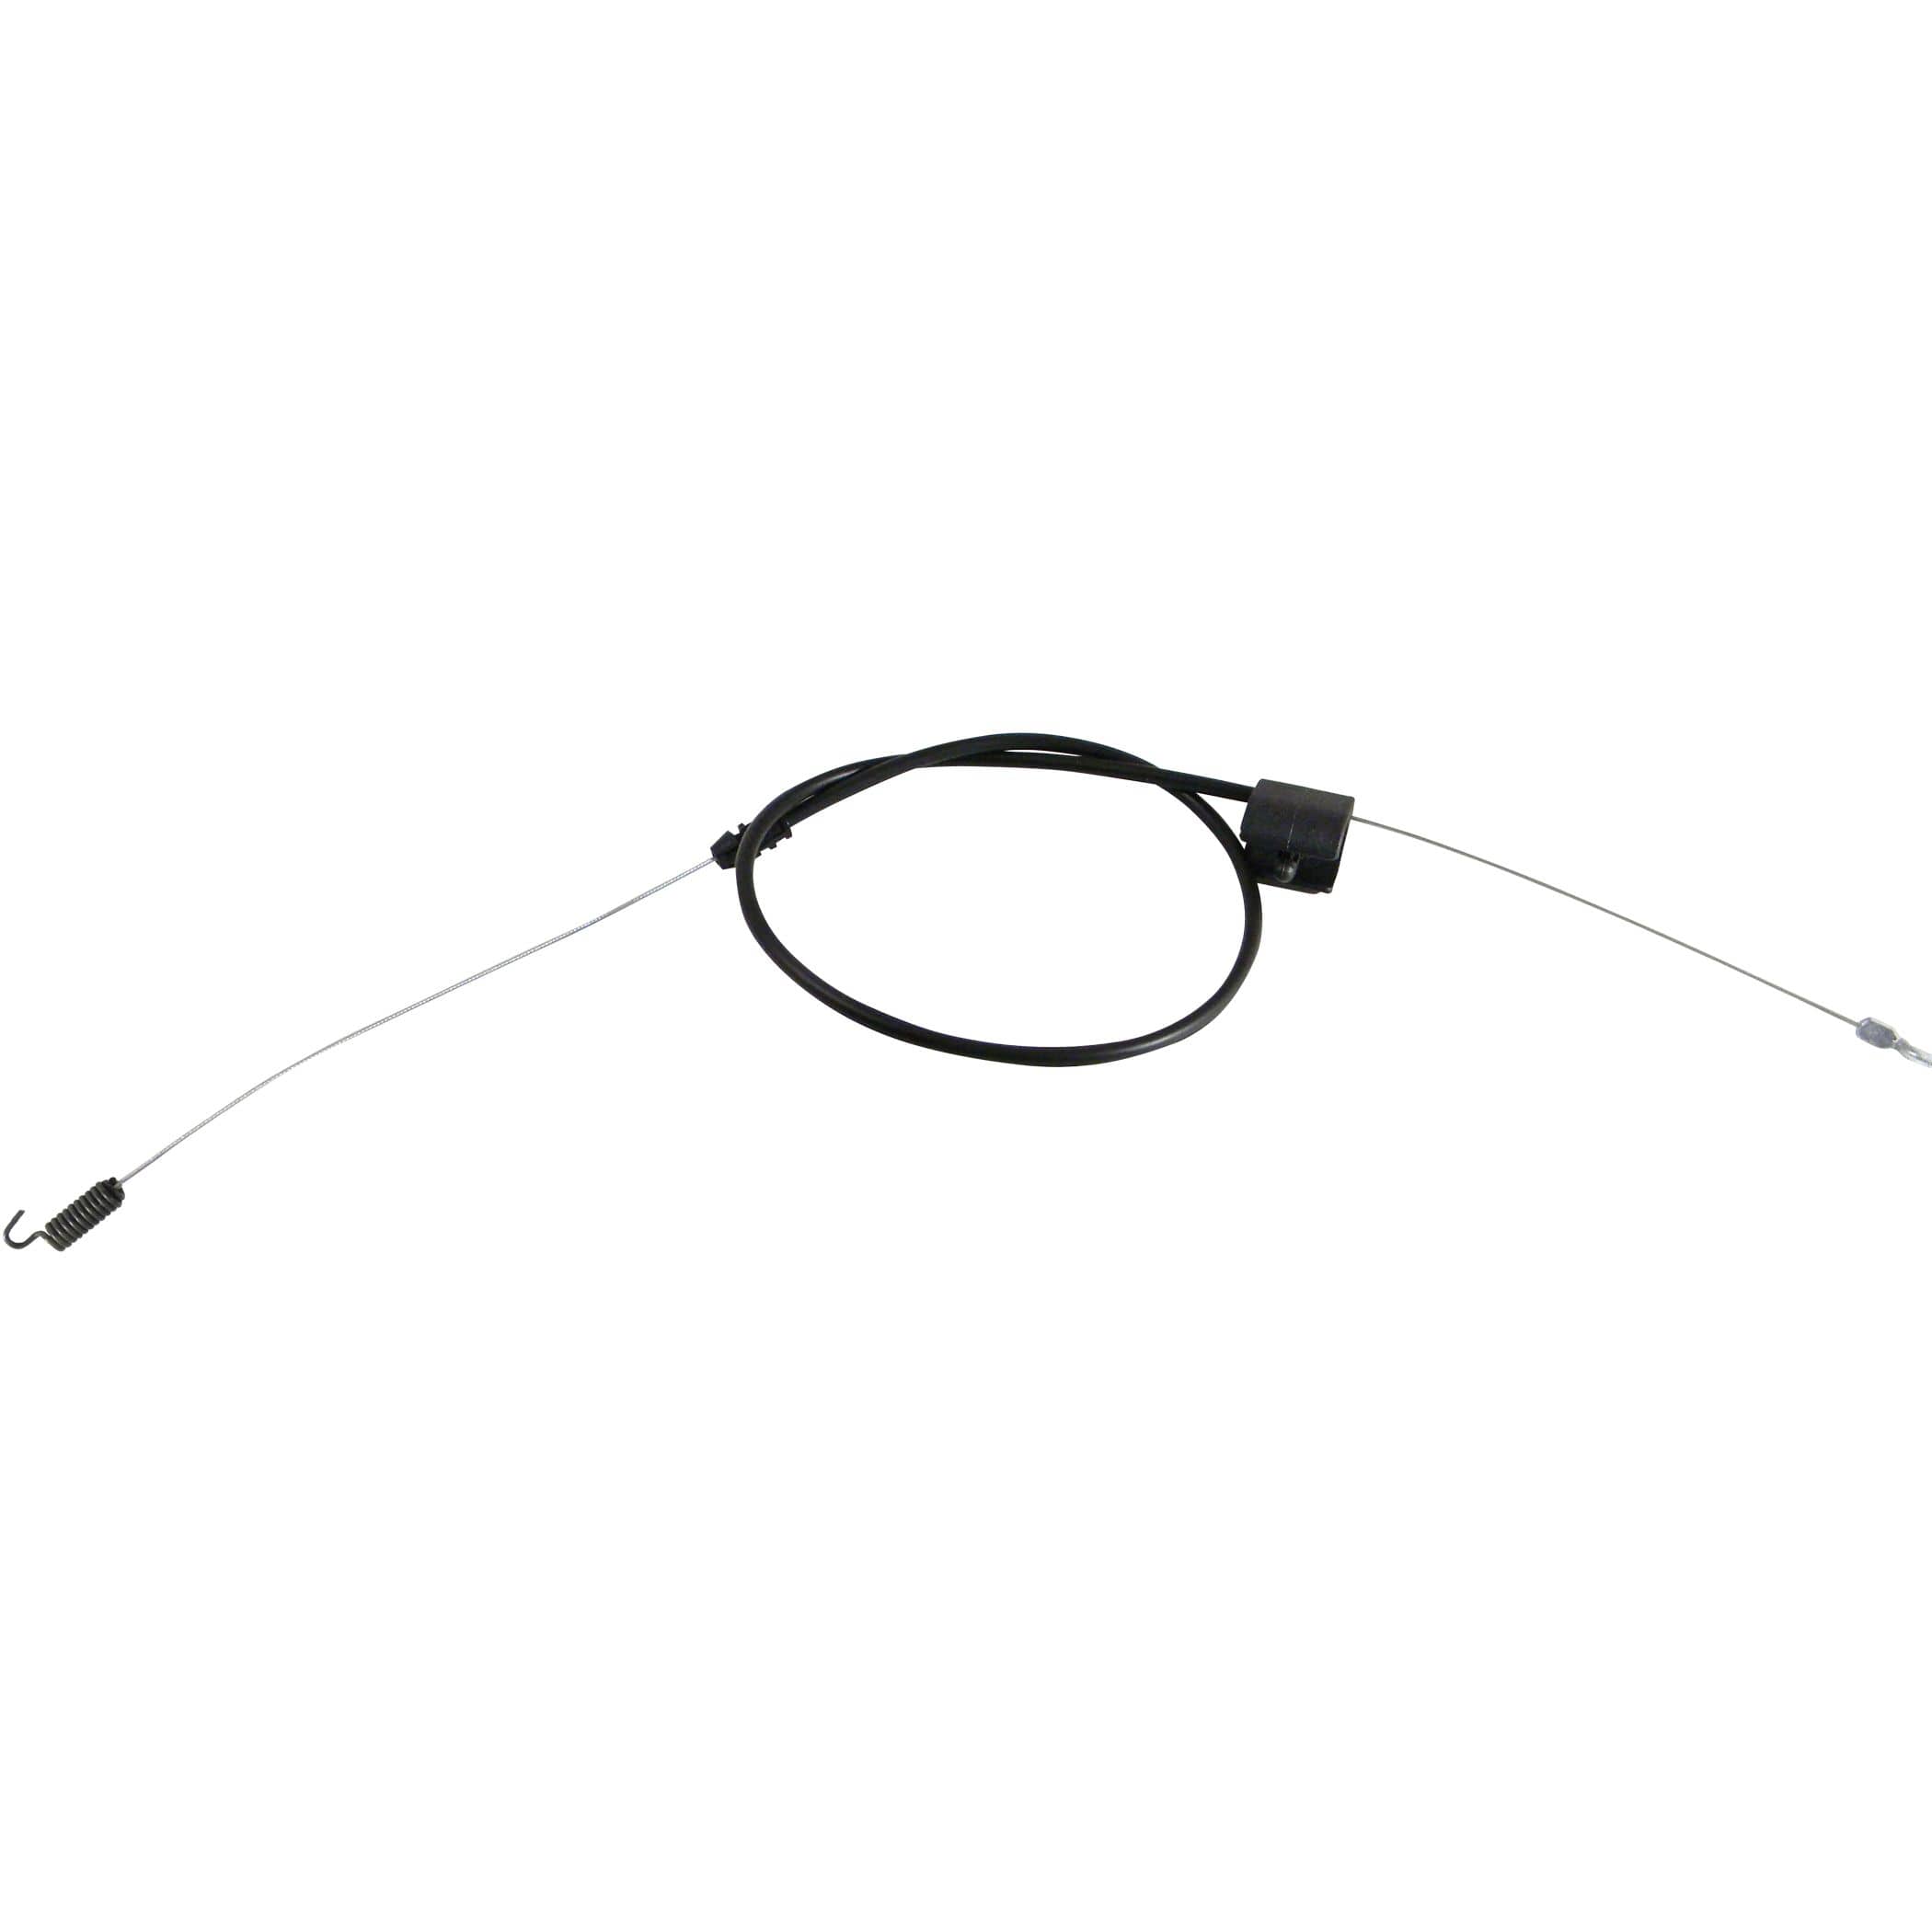 Goulotte range-câbles L. 118 cm Noir - JPG